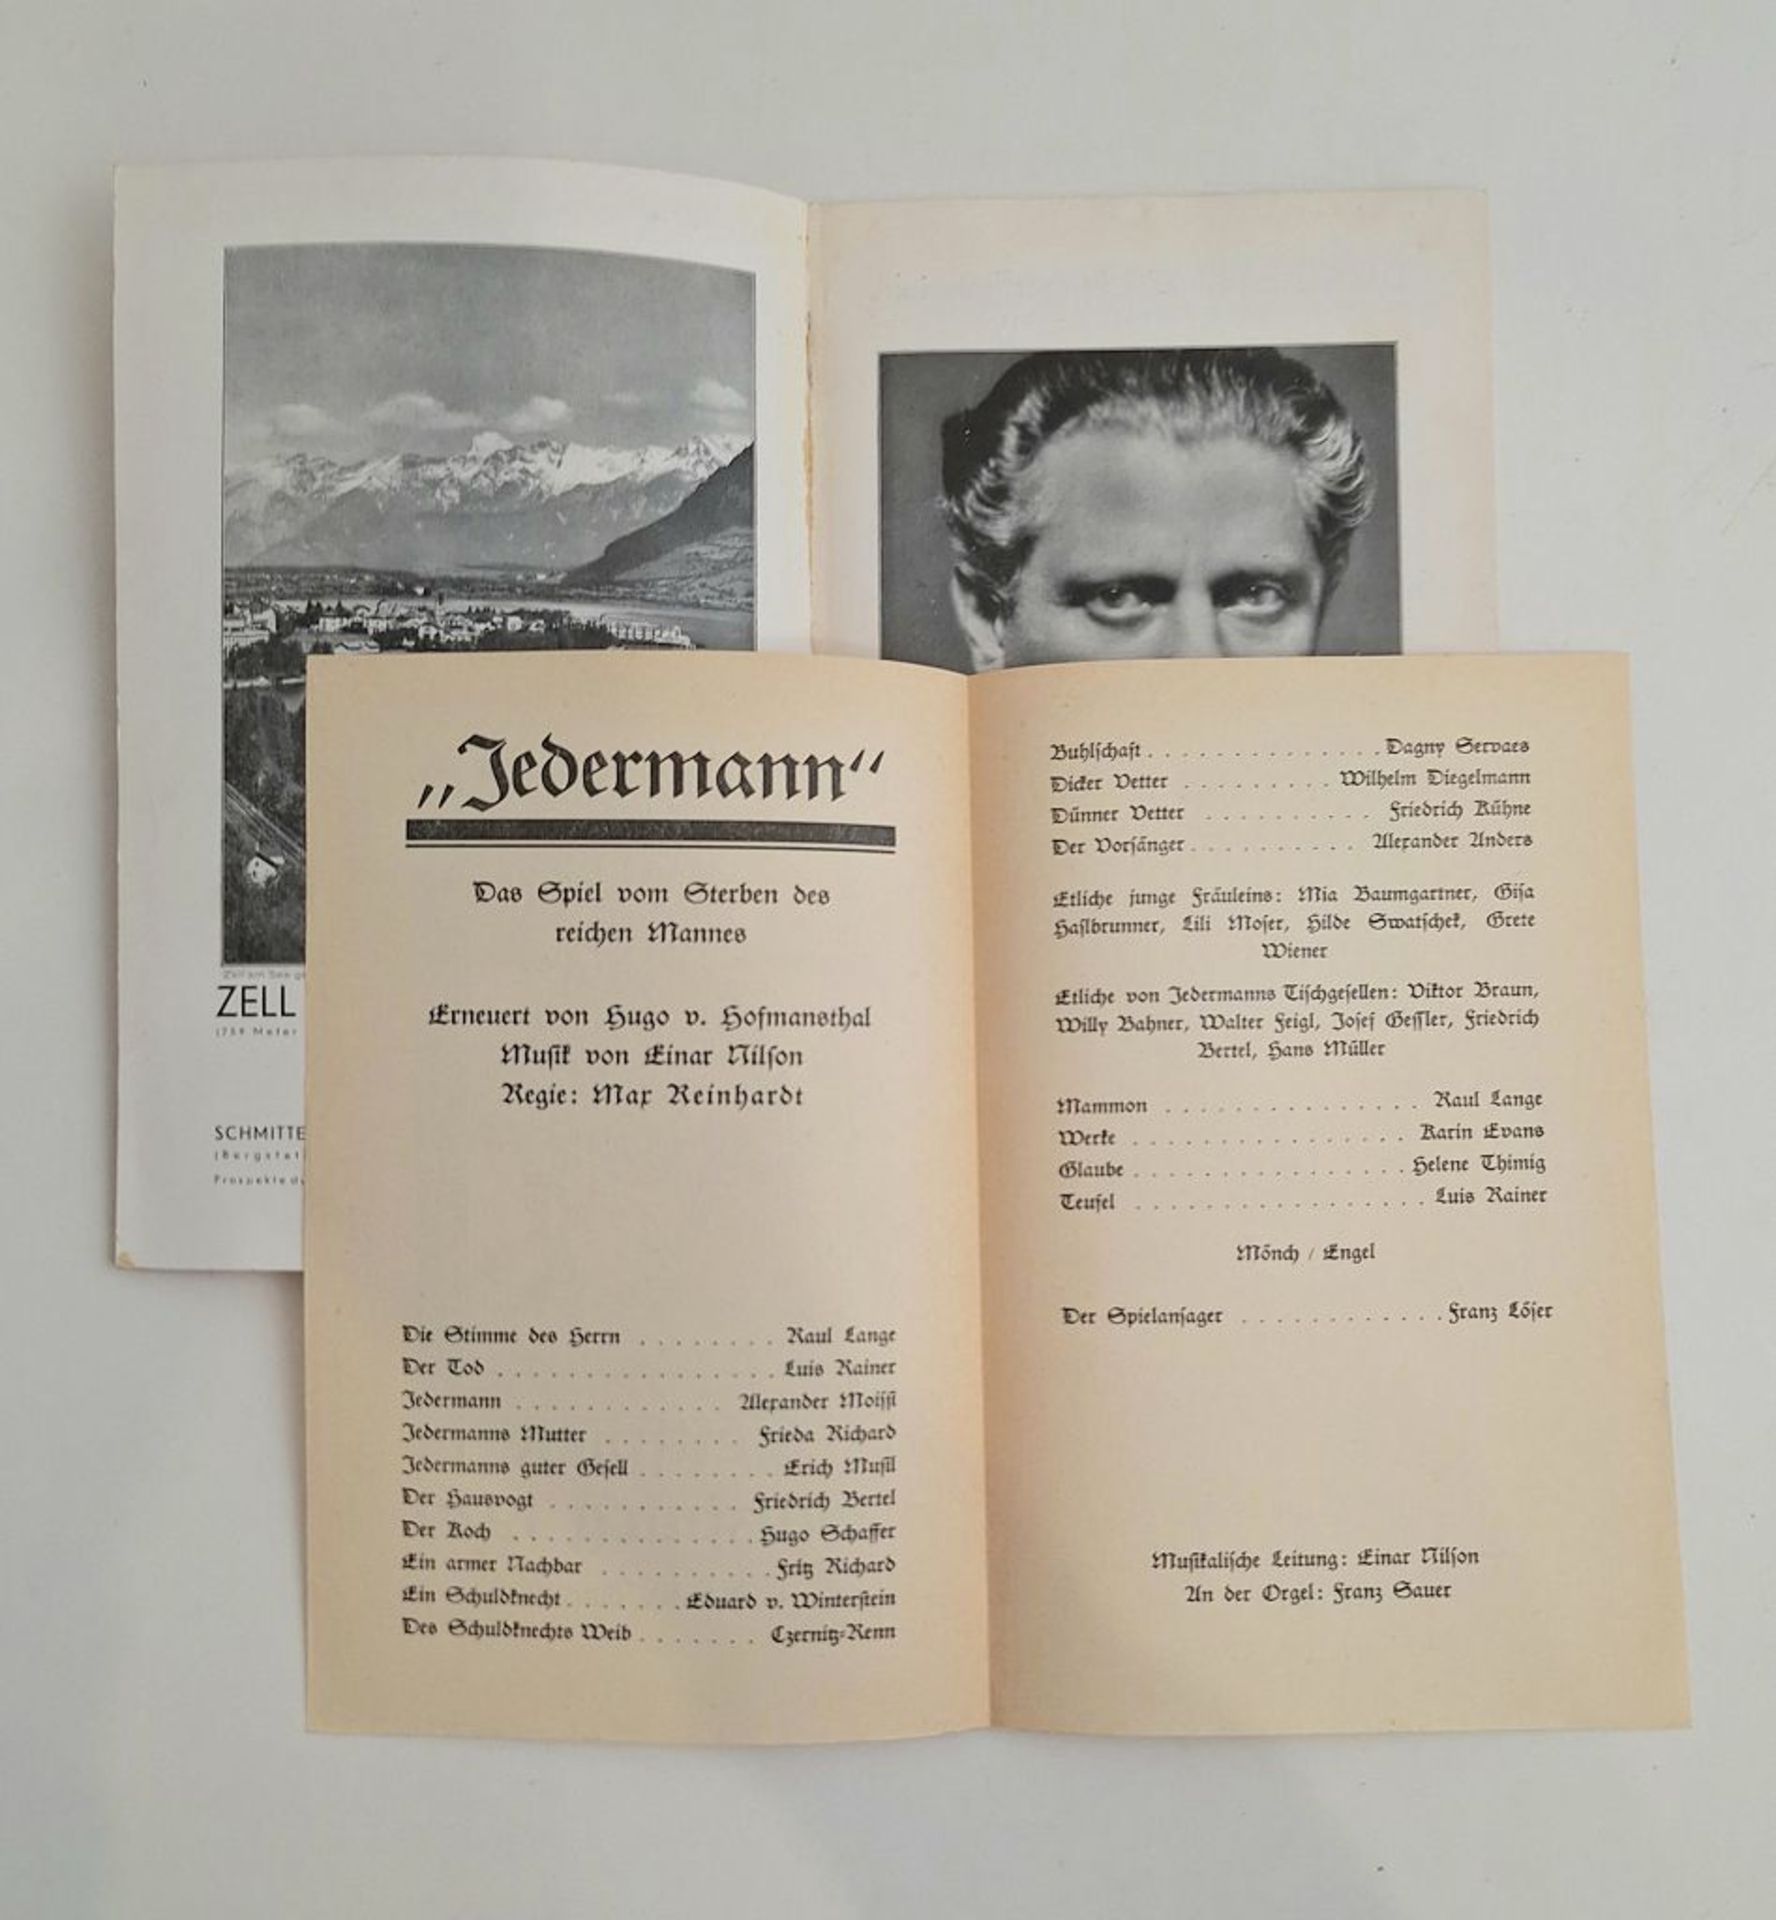 Programm und Führer der Salzburger Festspiele 1929 - Image 2 of 4